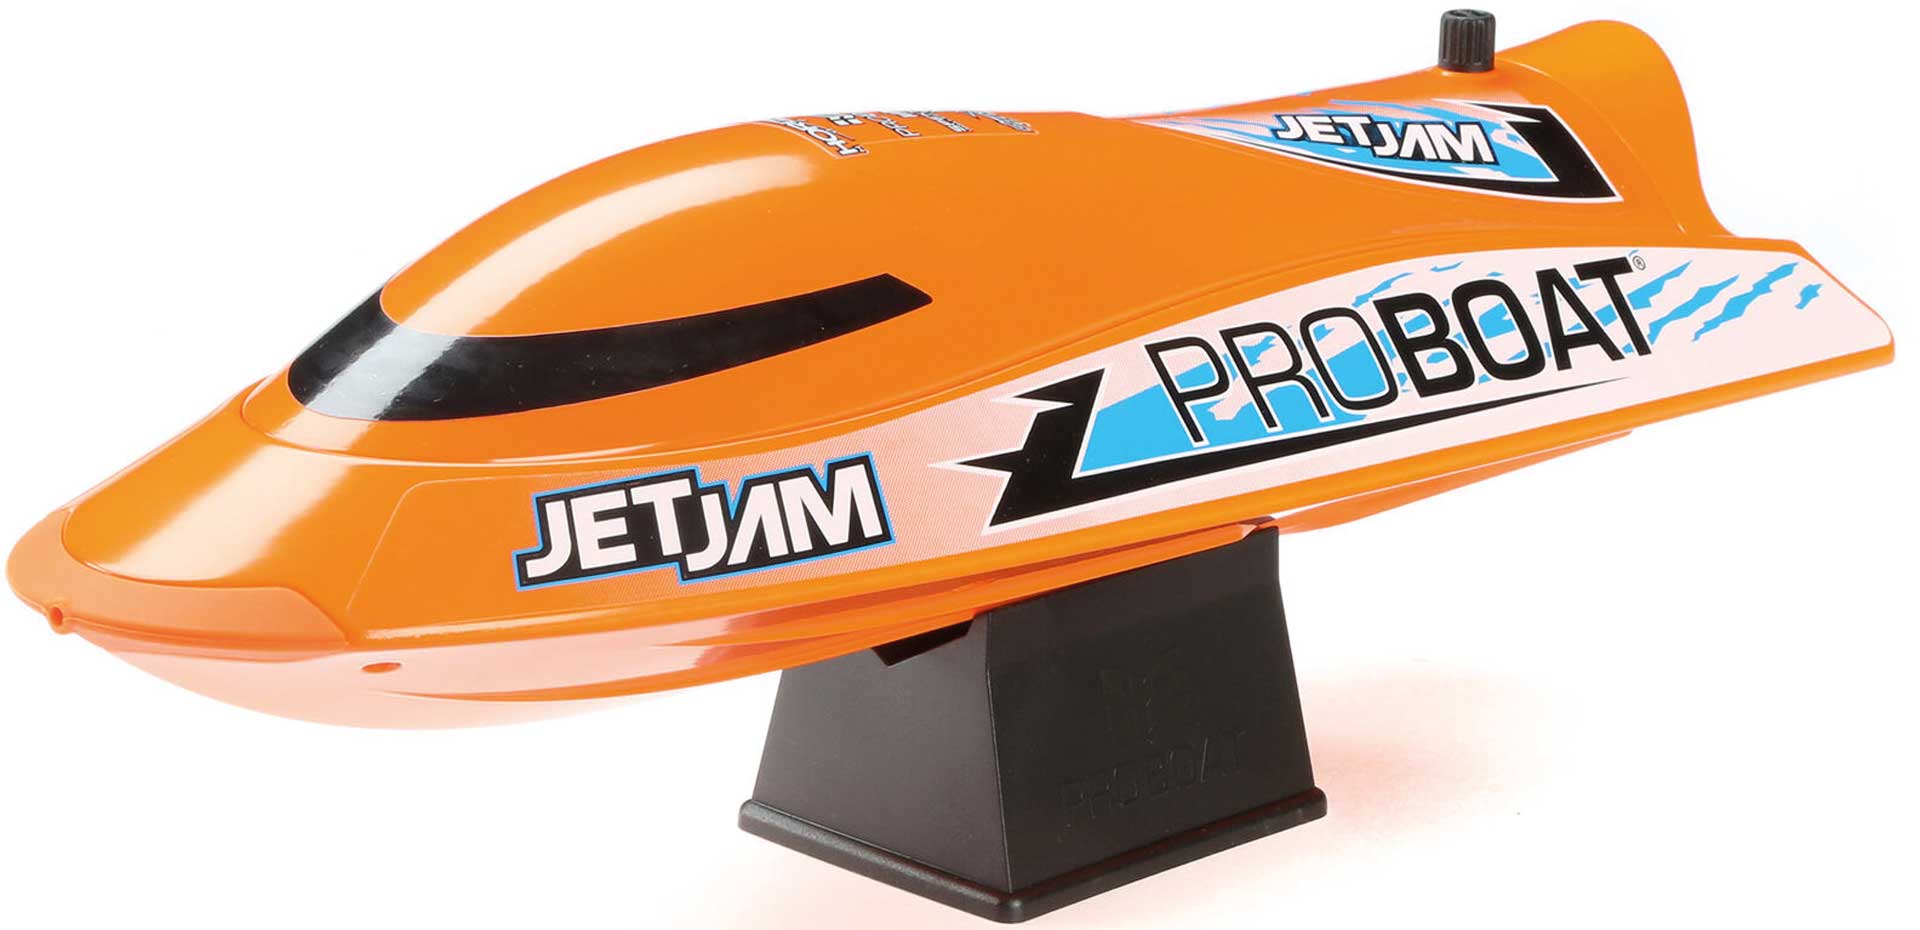 PROBOAT Jet Jam 12" Pool Racer, Brushed, Orange: RTR